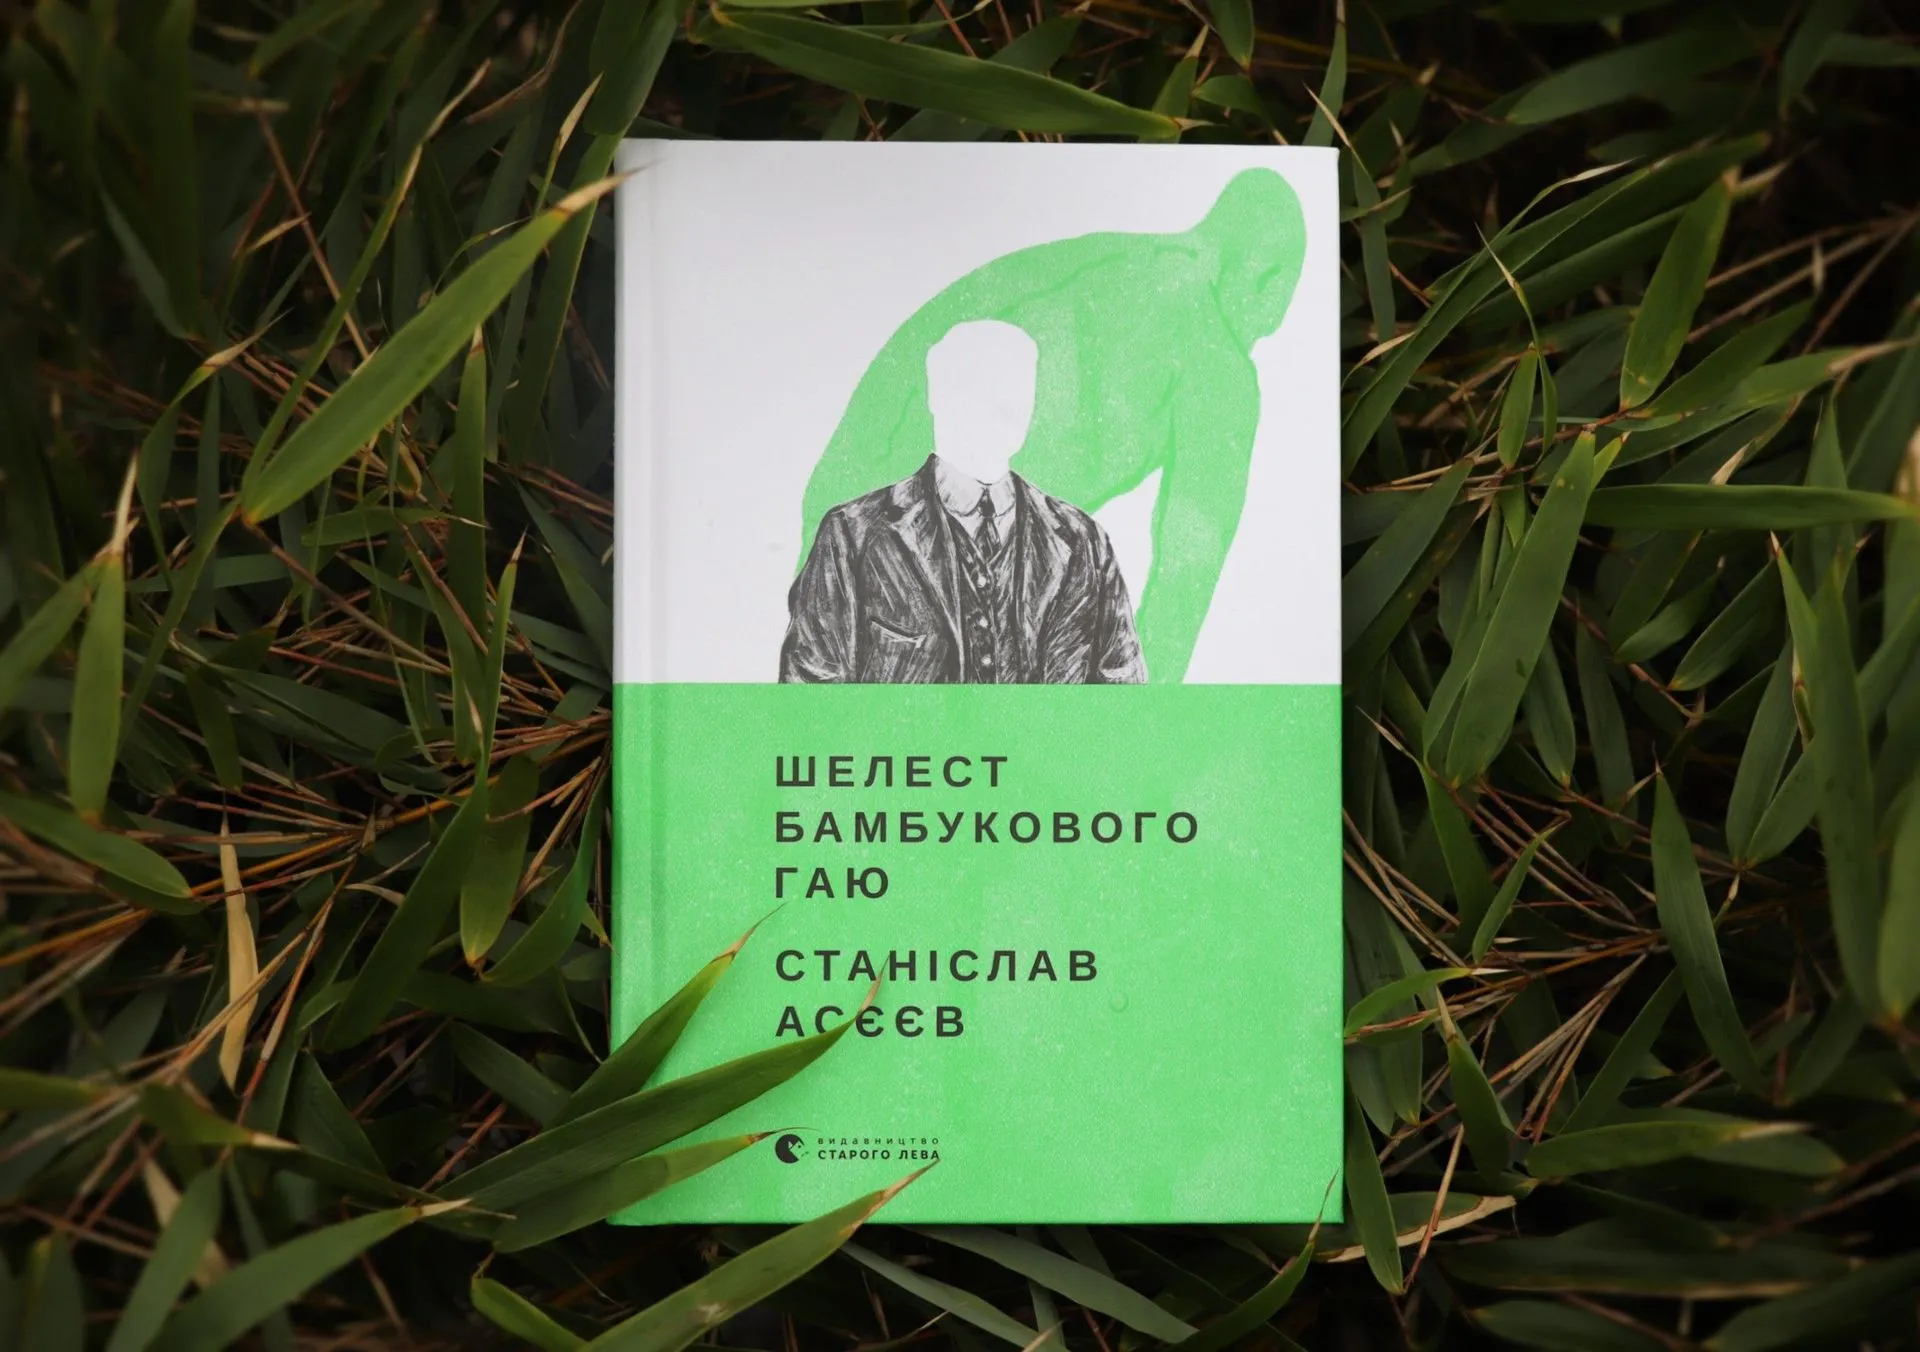 Збірка короткої прози від Станіслава Асєєва: зустрічаємо книгу «Шелест бамбукового гаю»